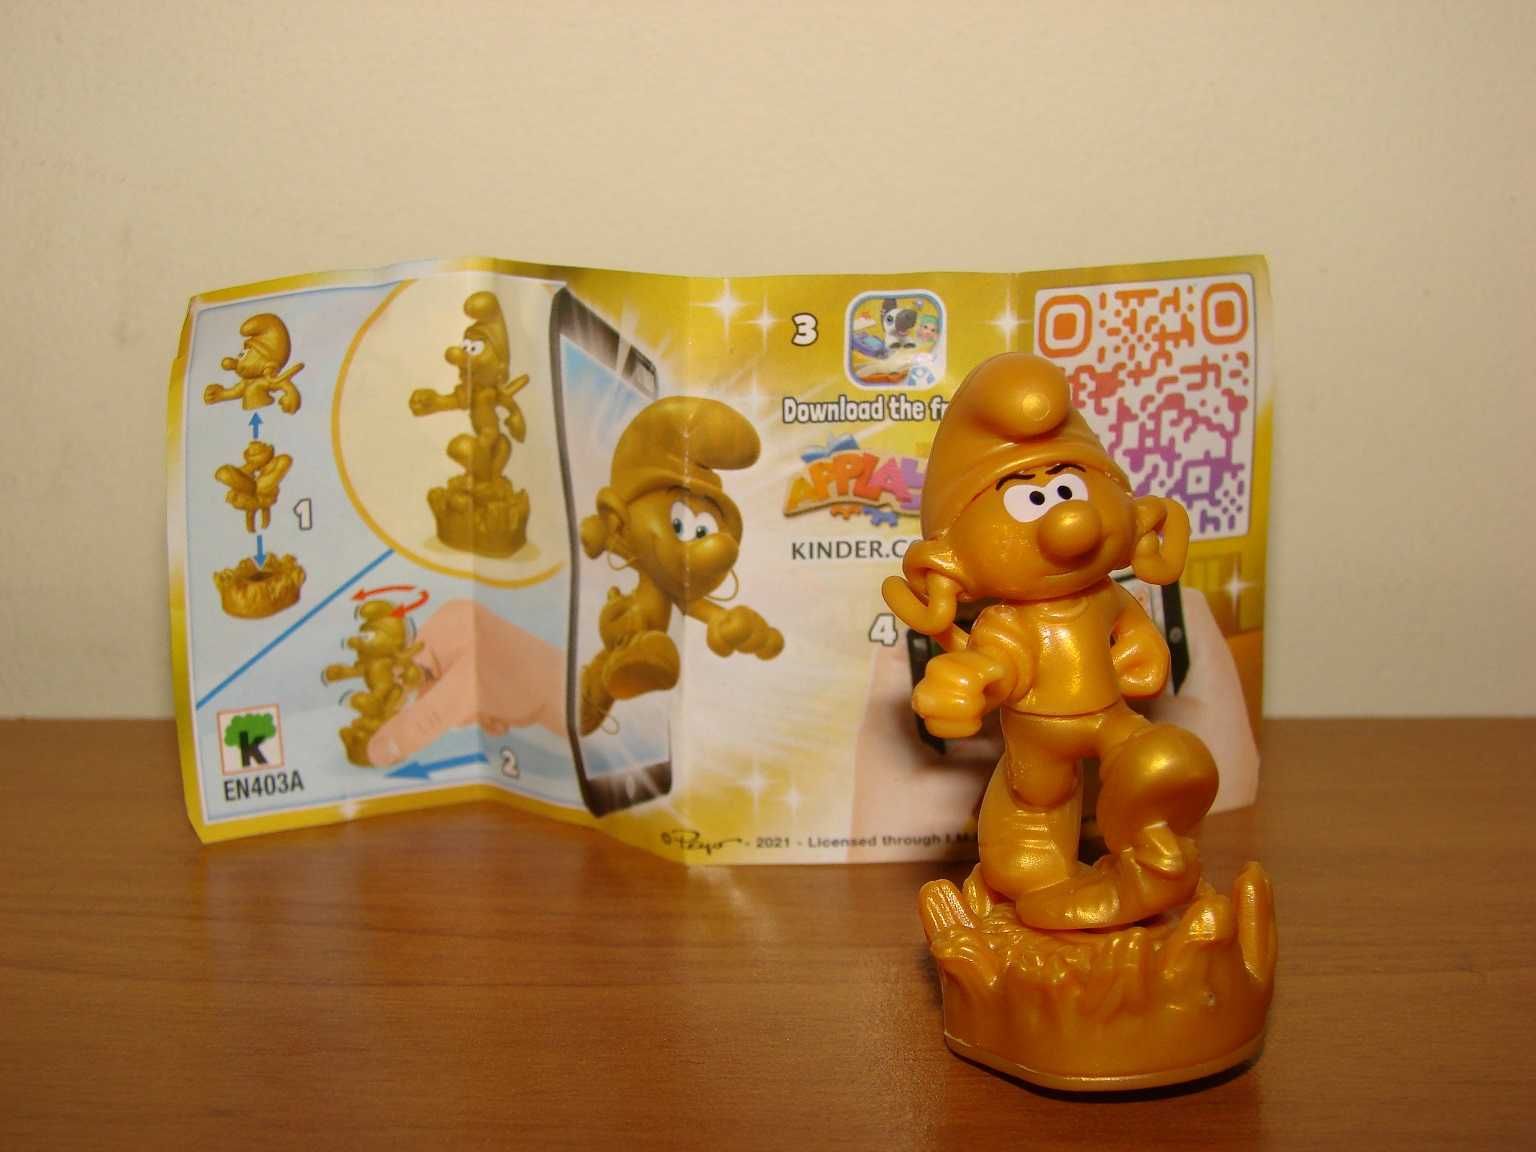 NOWA figurka Złoty Smerf z jajka niespodzianki kinder + kartka